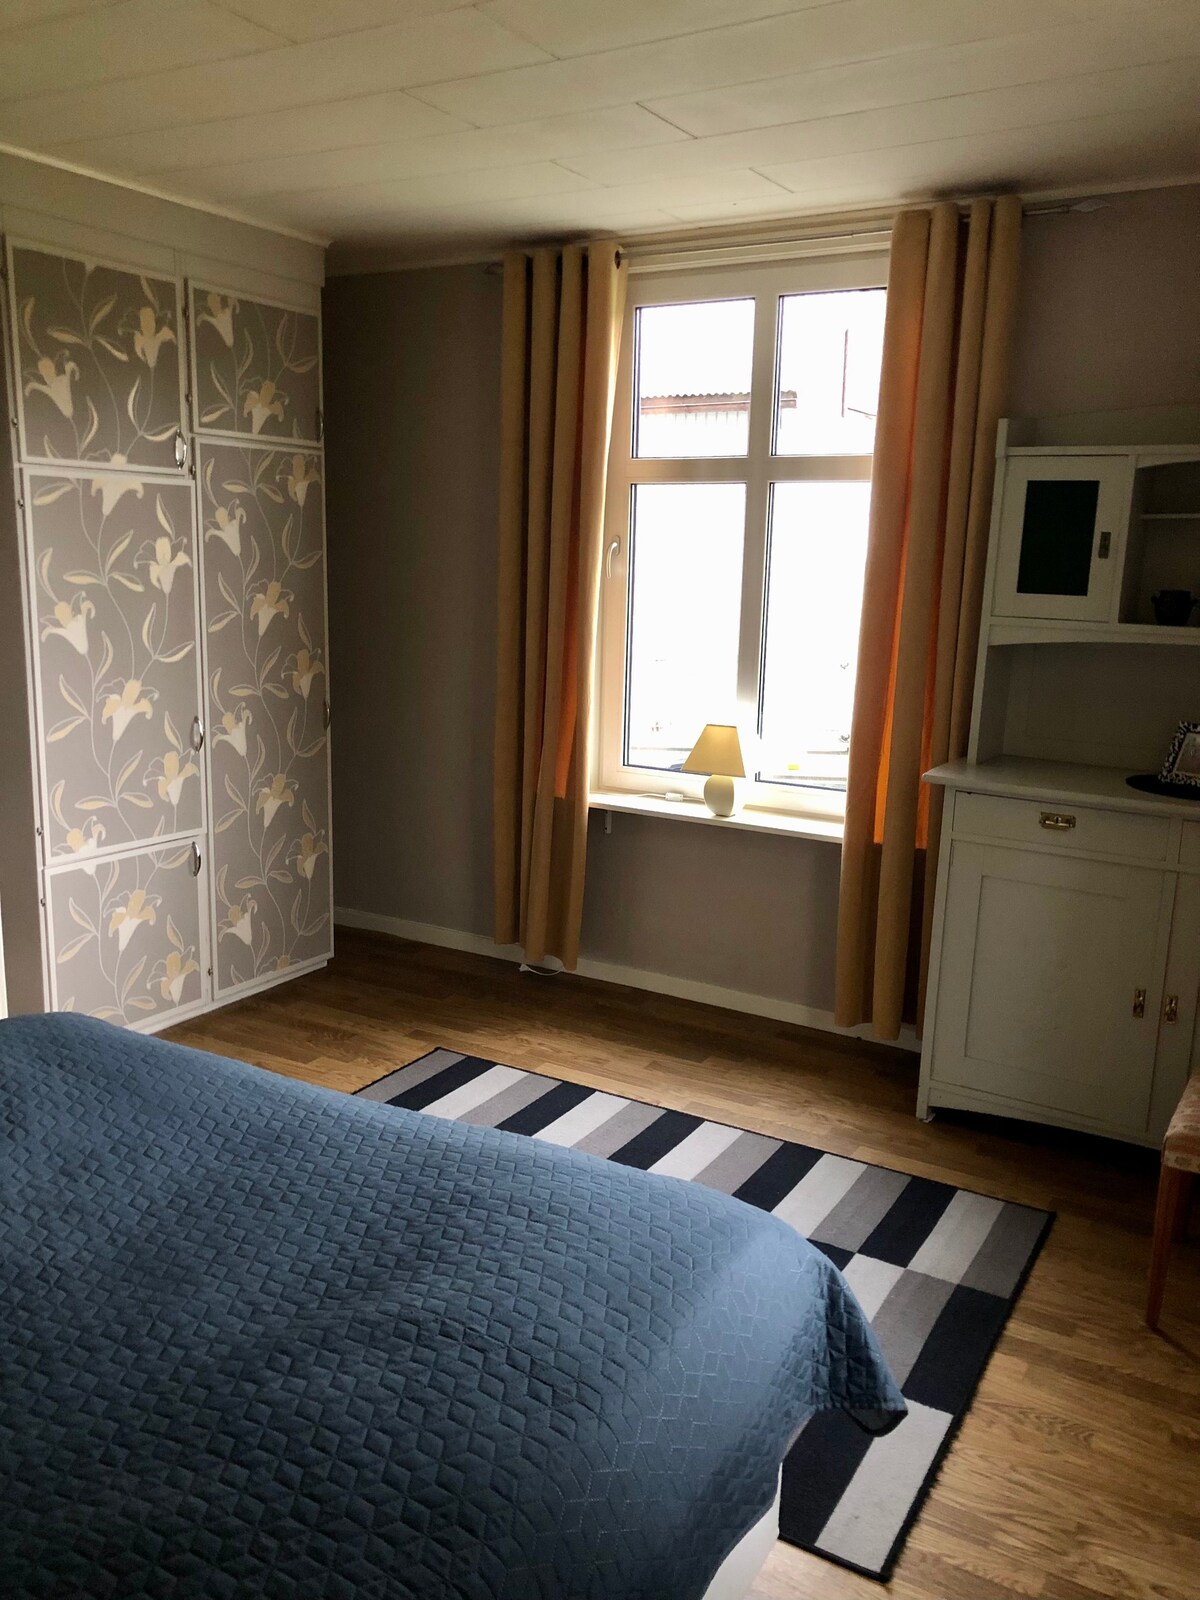 Lägenhet med 2 rum uthyres i Småland utmed E4:an